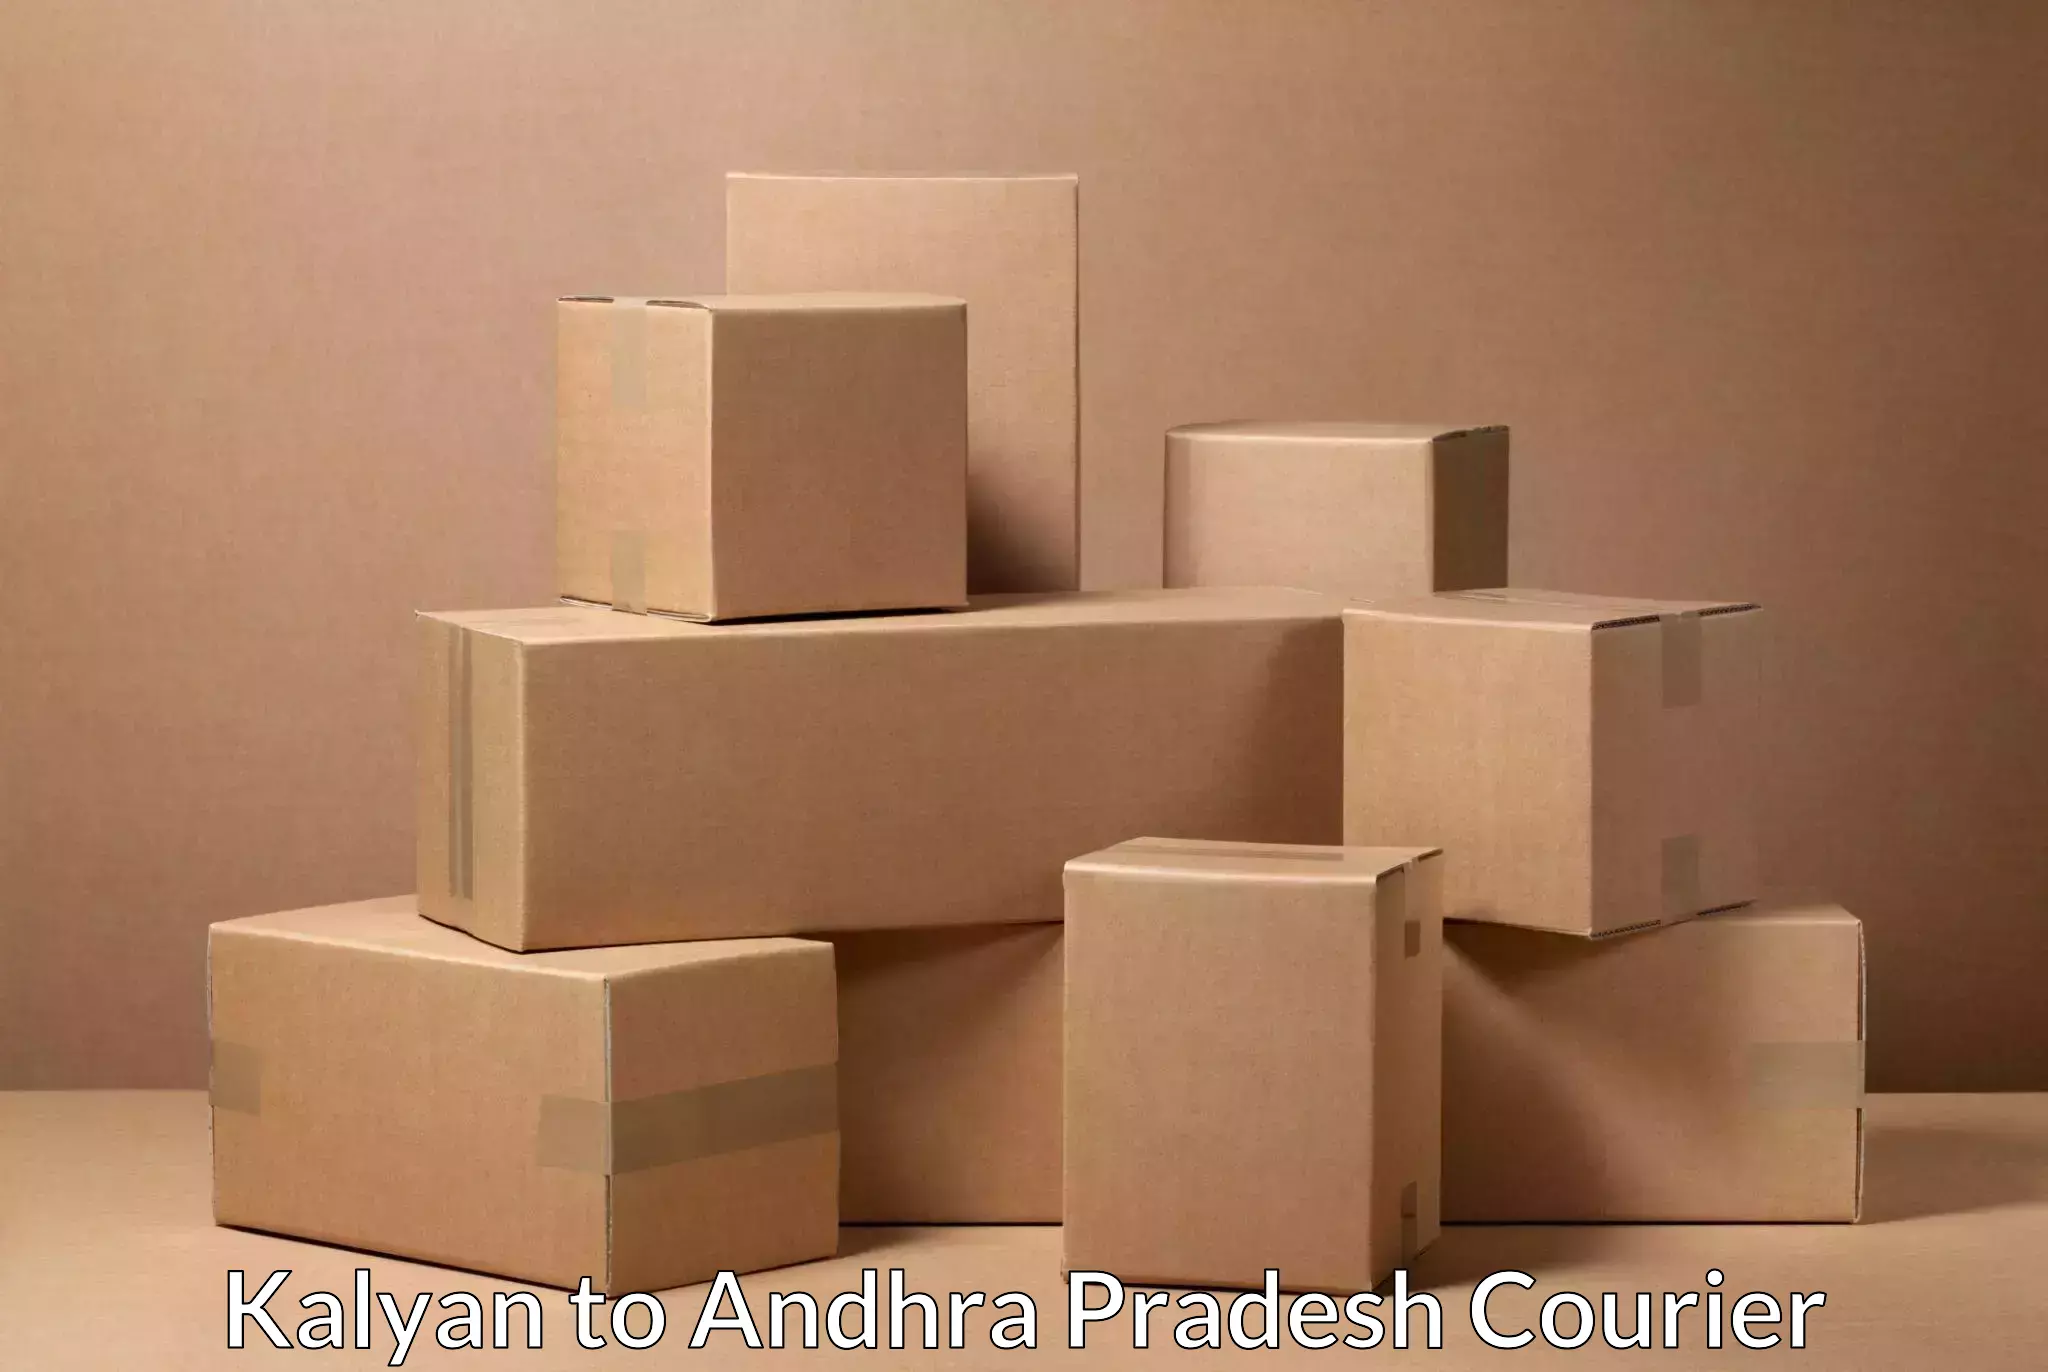 Efficient shipping platforms Kalyan to Andhra Pradesh